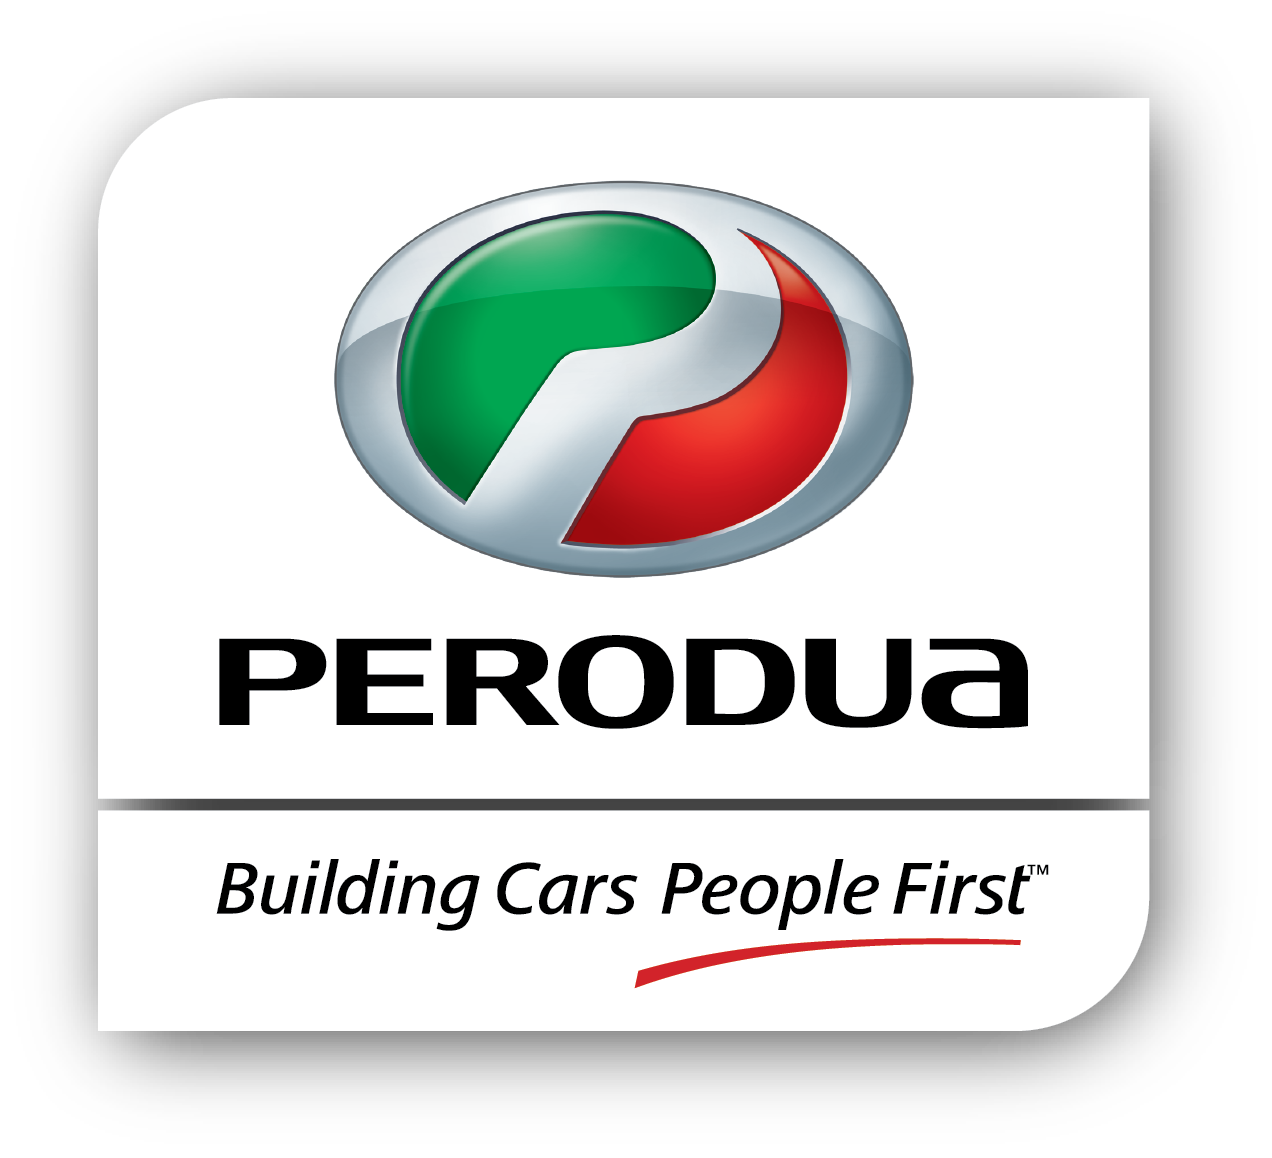 Jualan Perodua dua bulan pertama 2019 naik 7.3%